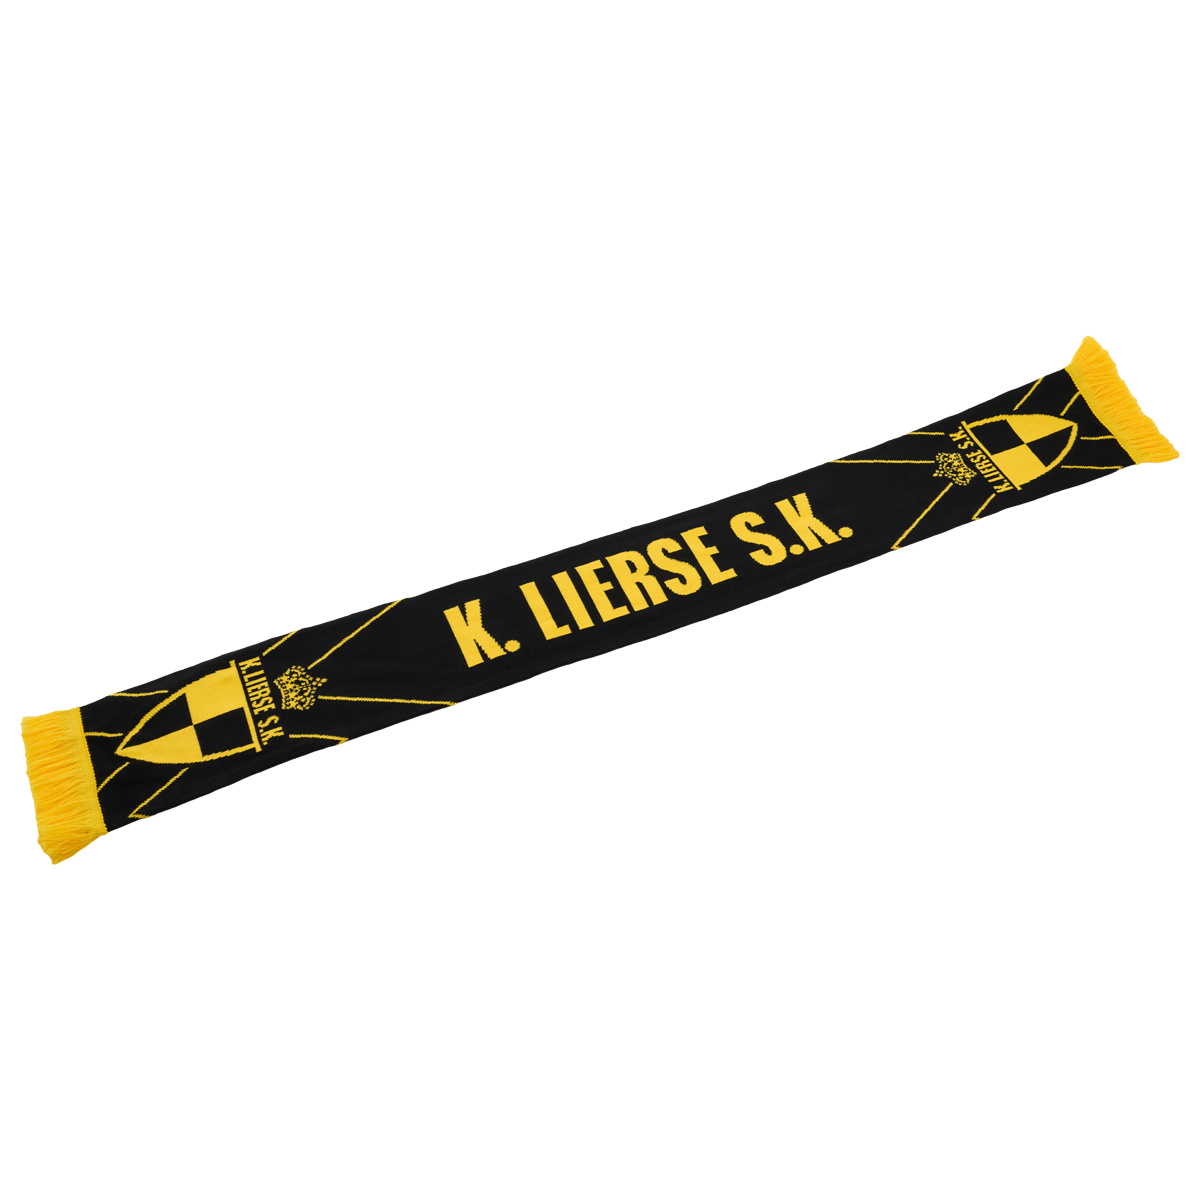 Topfanz écharpe noir avec croix jaune et logo